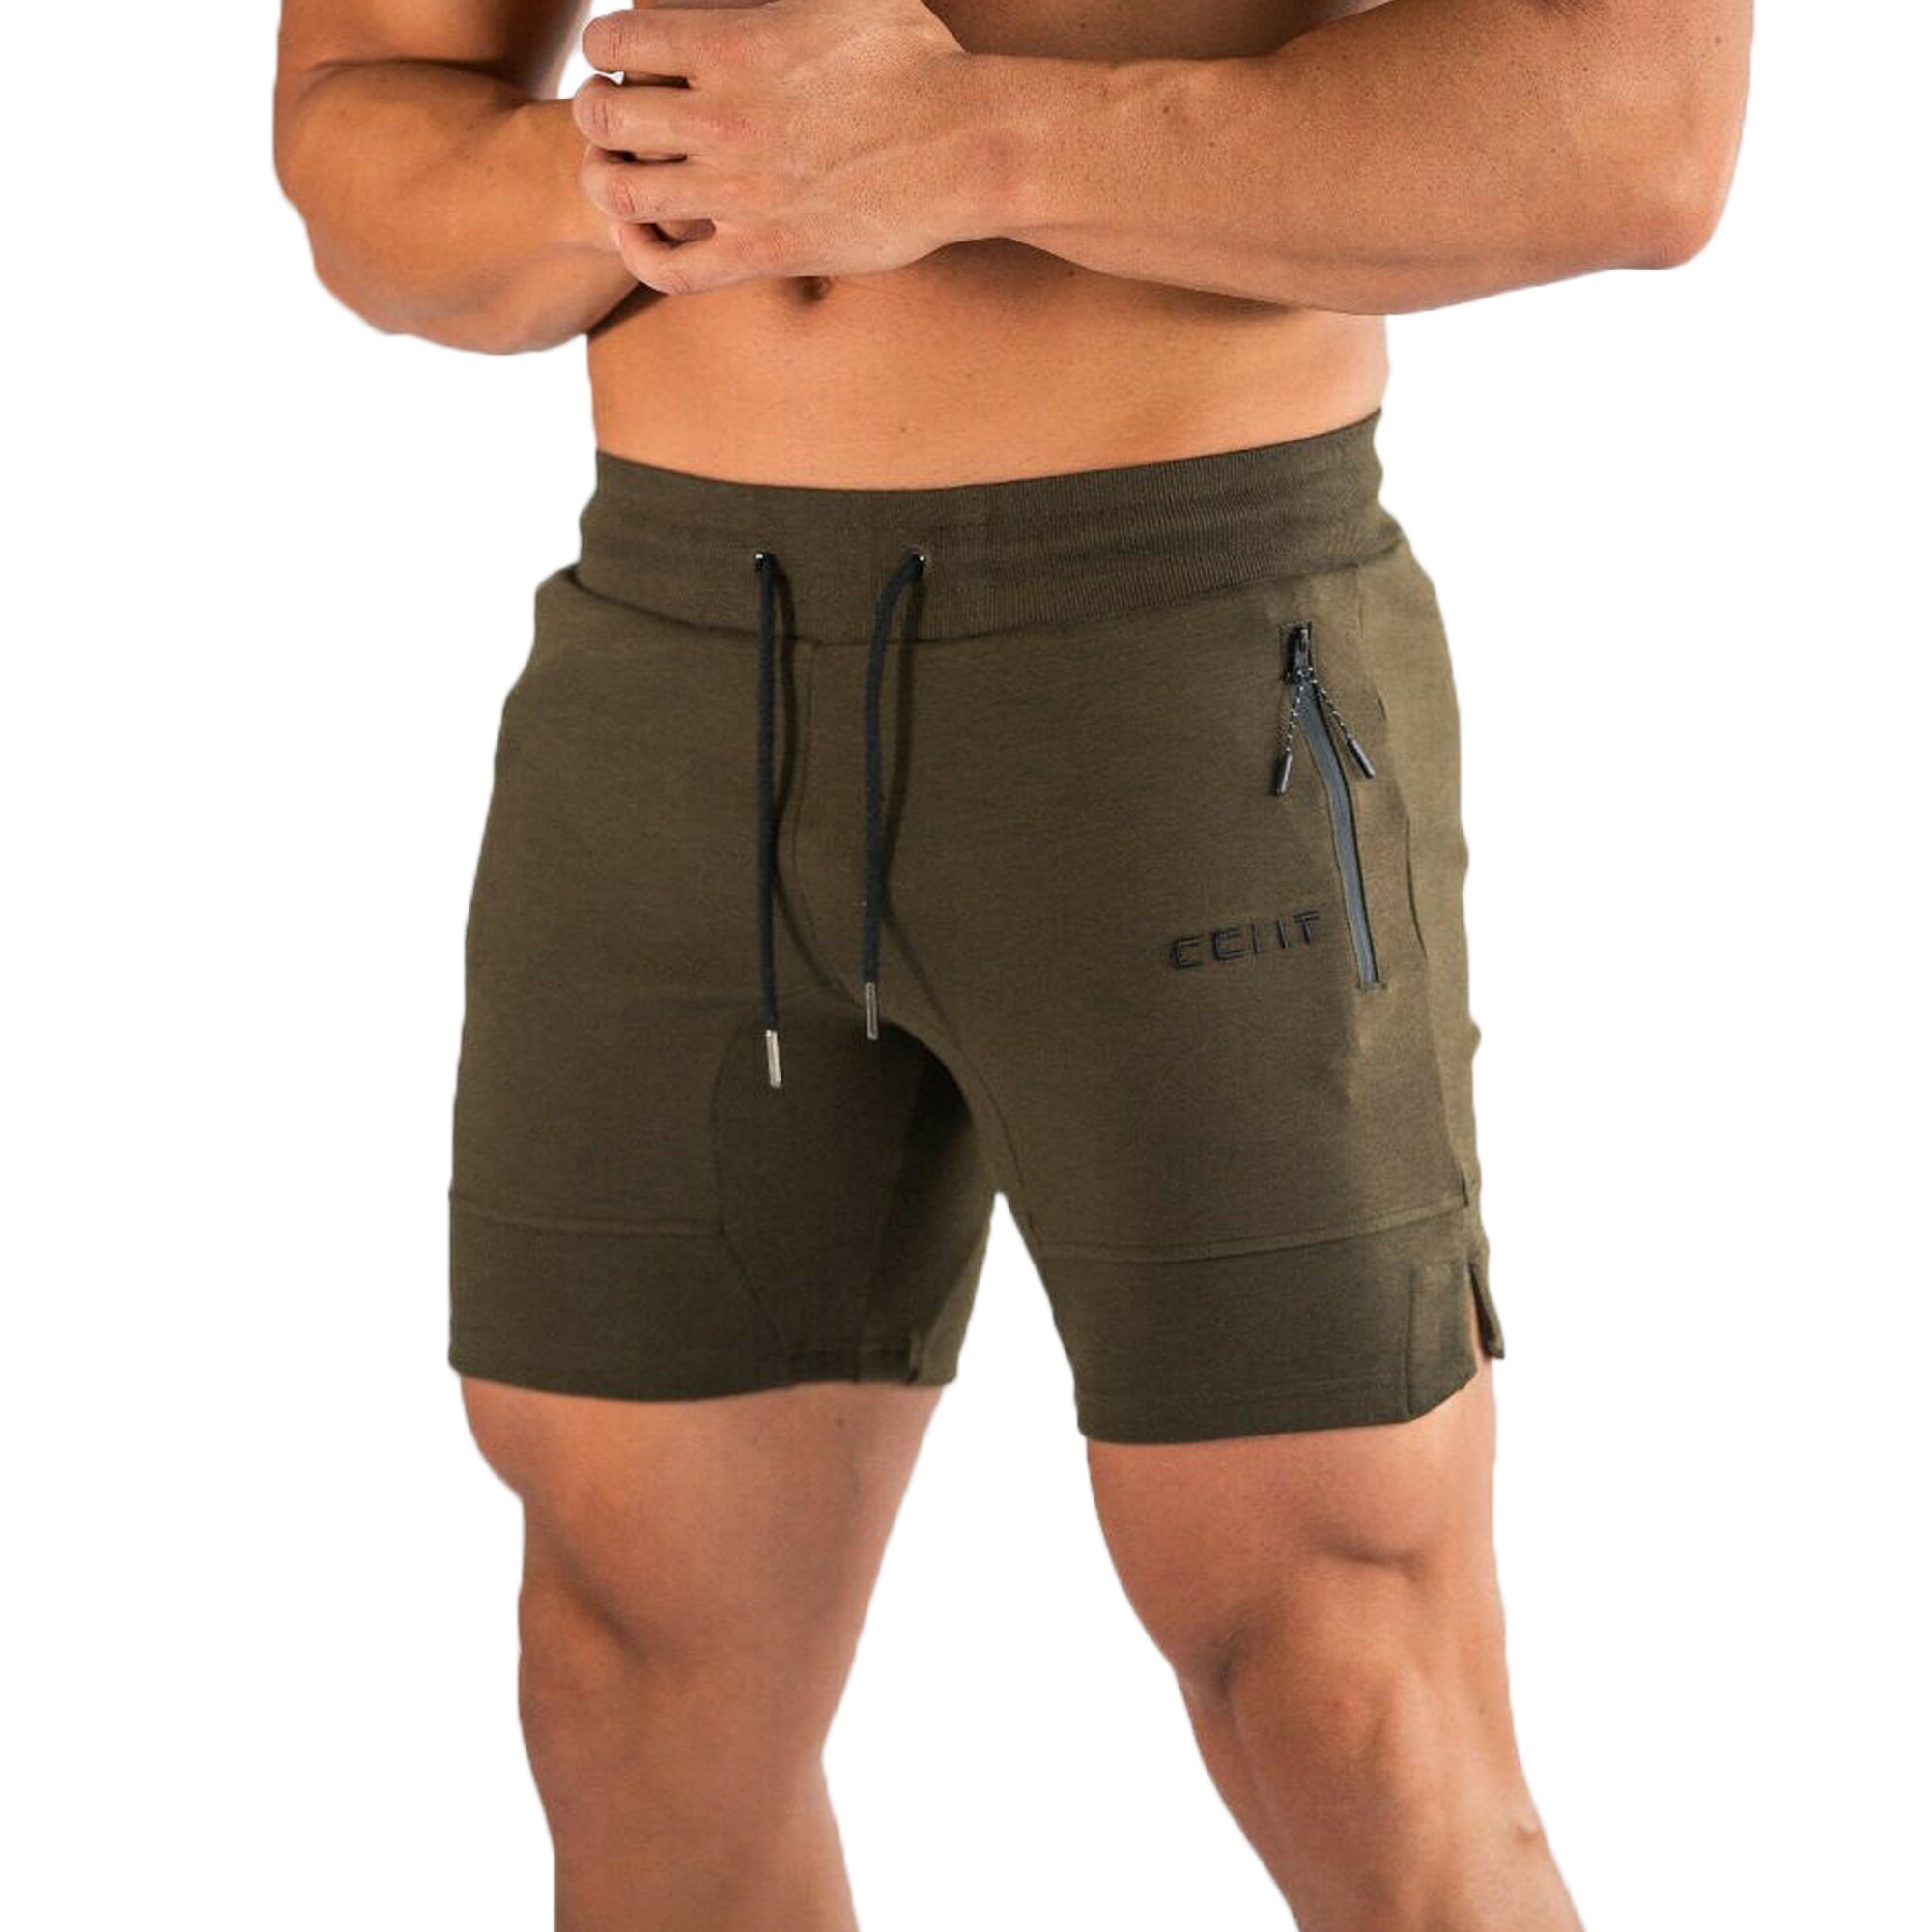 Best Cargo Shorts For Men